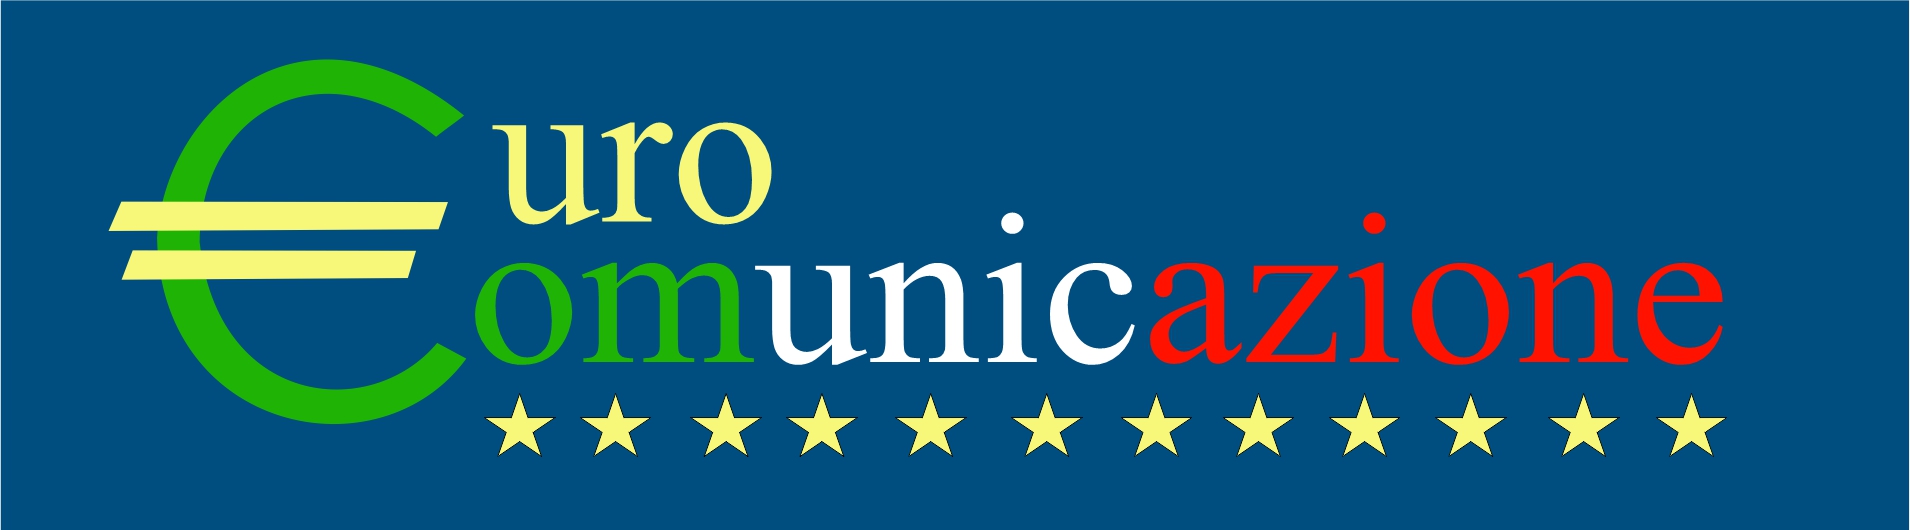 Autori - Eurocomunicazione